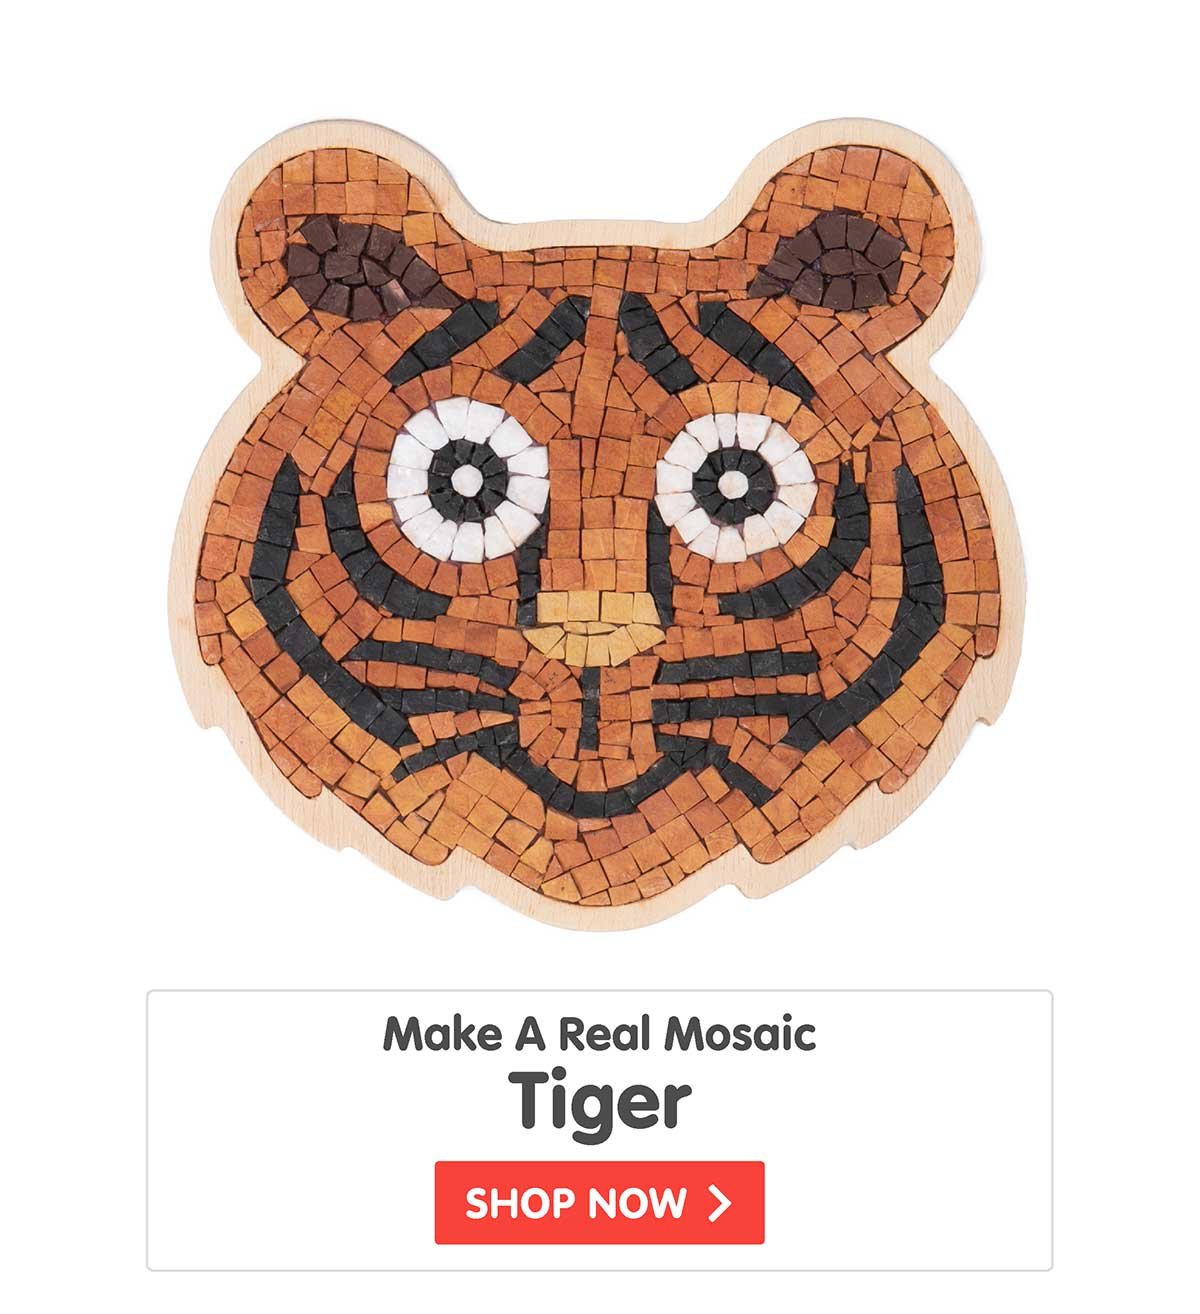 Make A Real Mosaic - Tiger